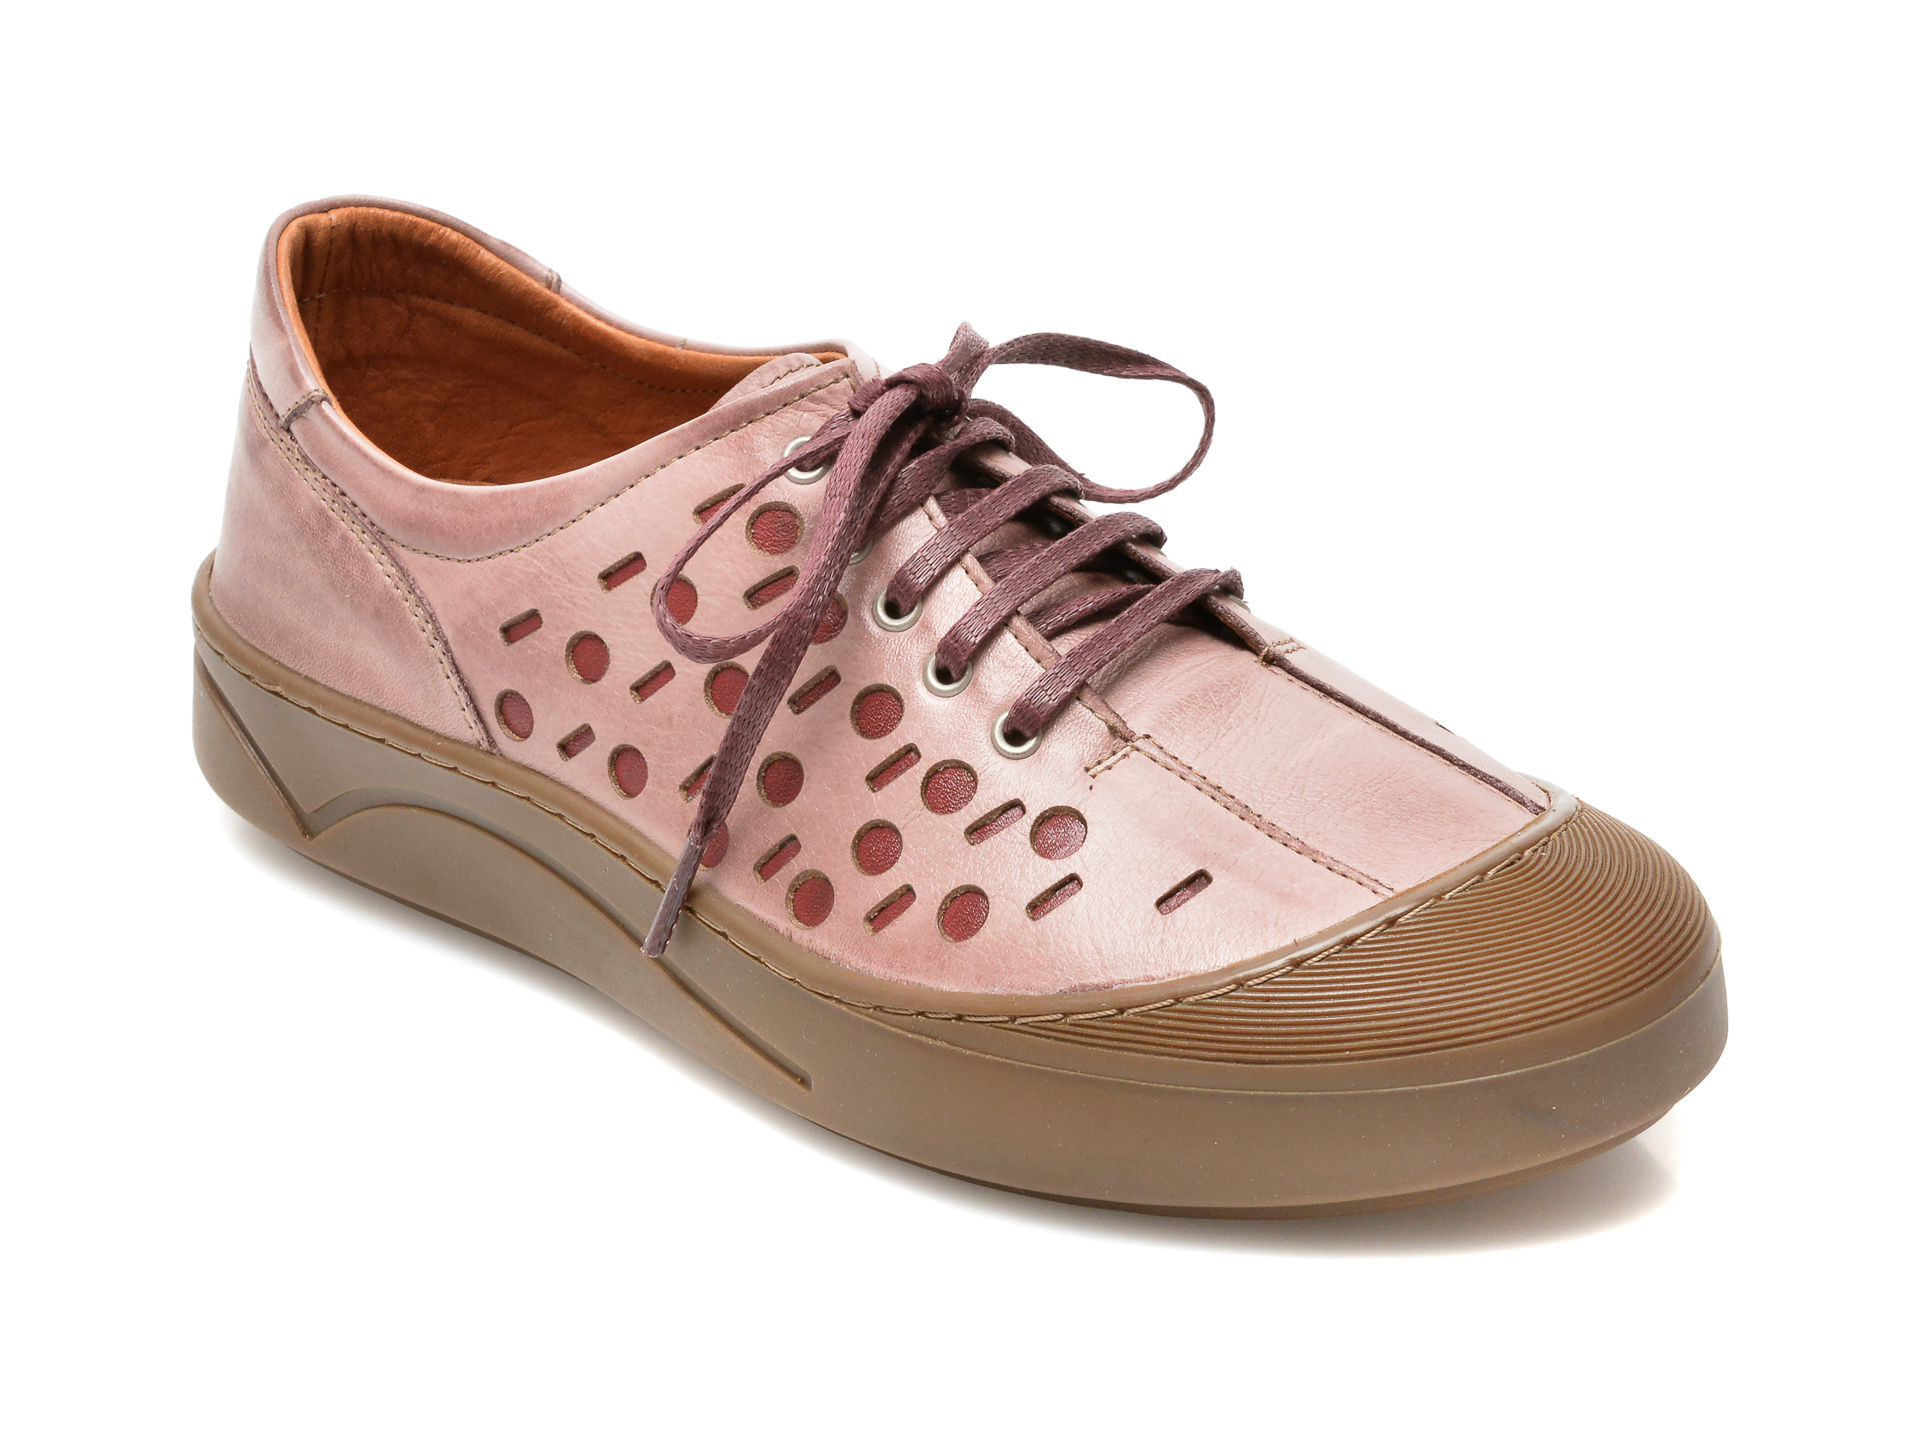 Pantofi FLAVIA PASSINI roz, 1018, din piele naturala Flavia Passini